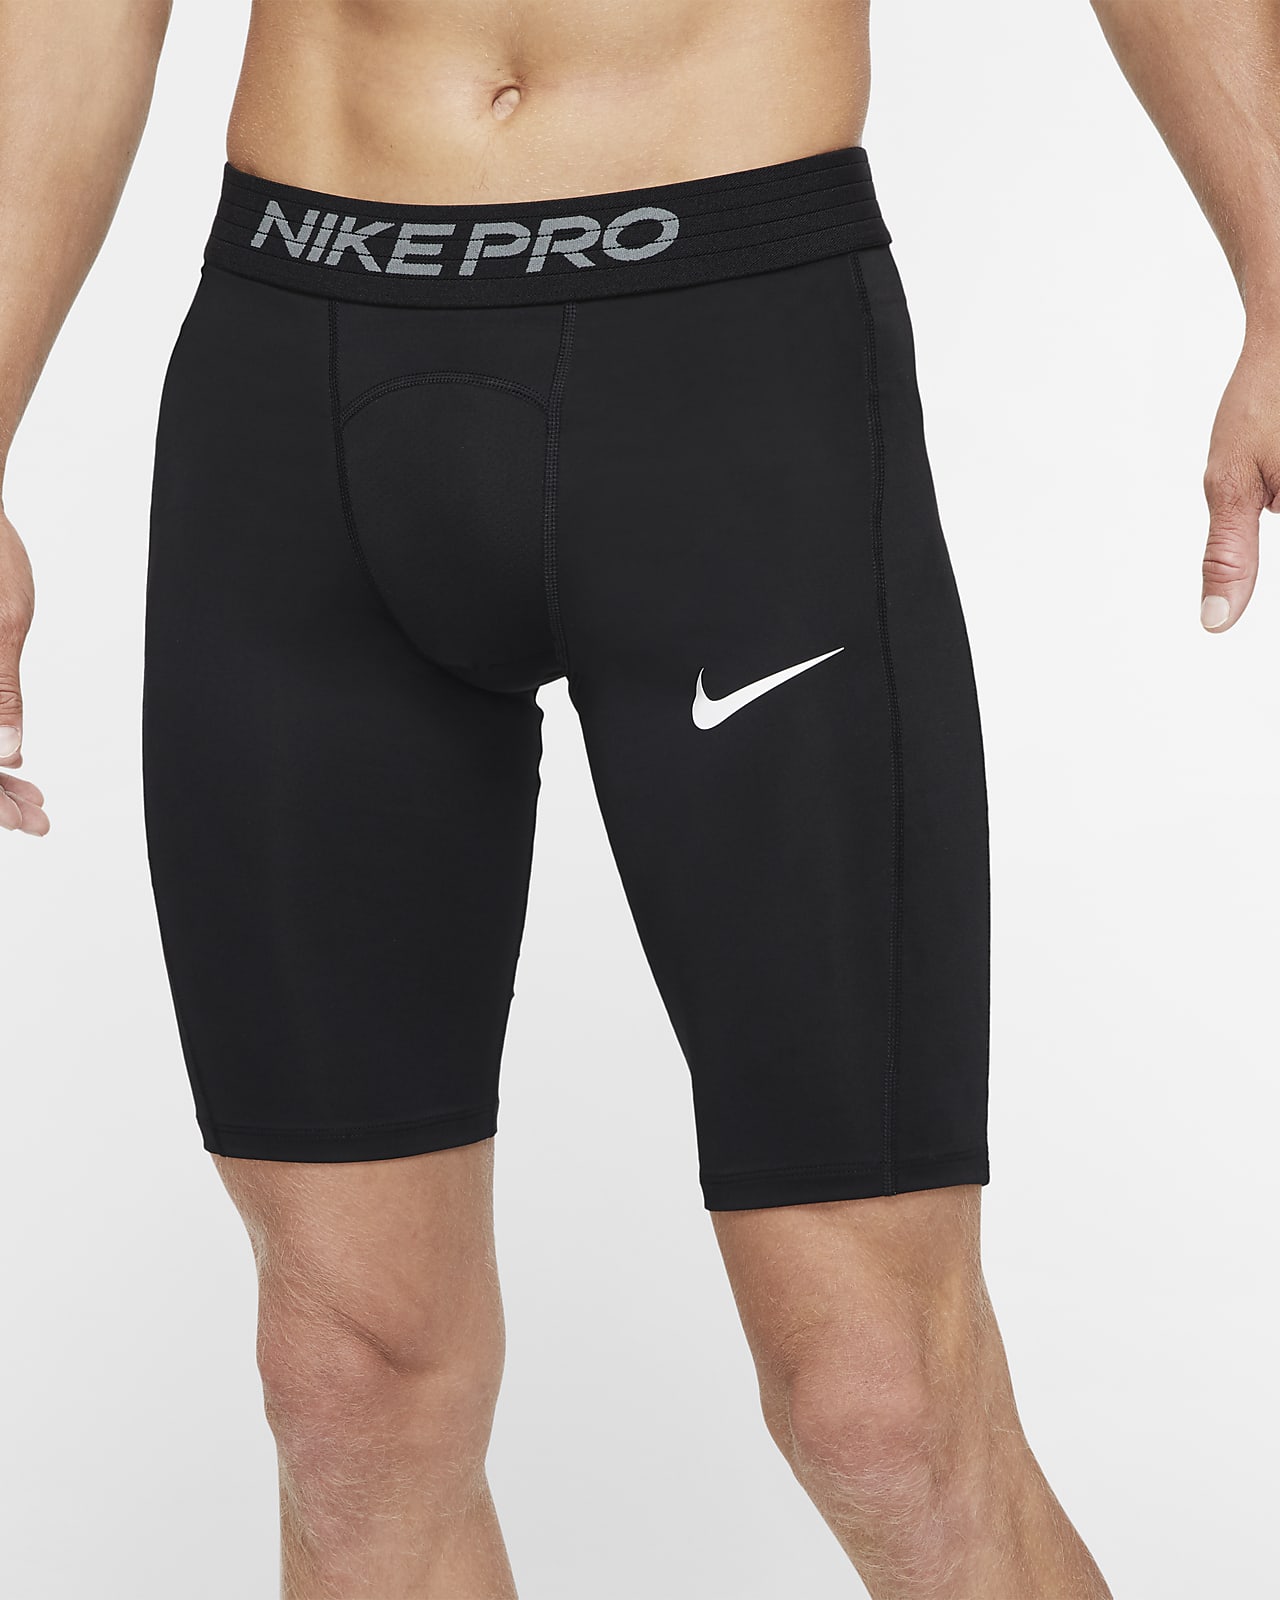 Мужские удлиненные шорты Nike Pro. Nike RU